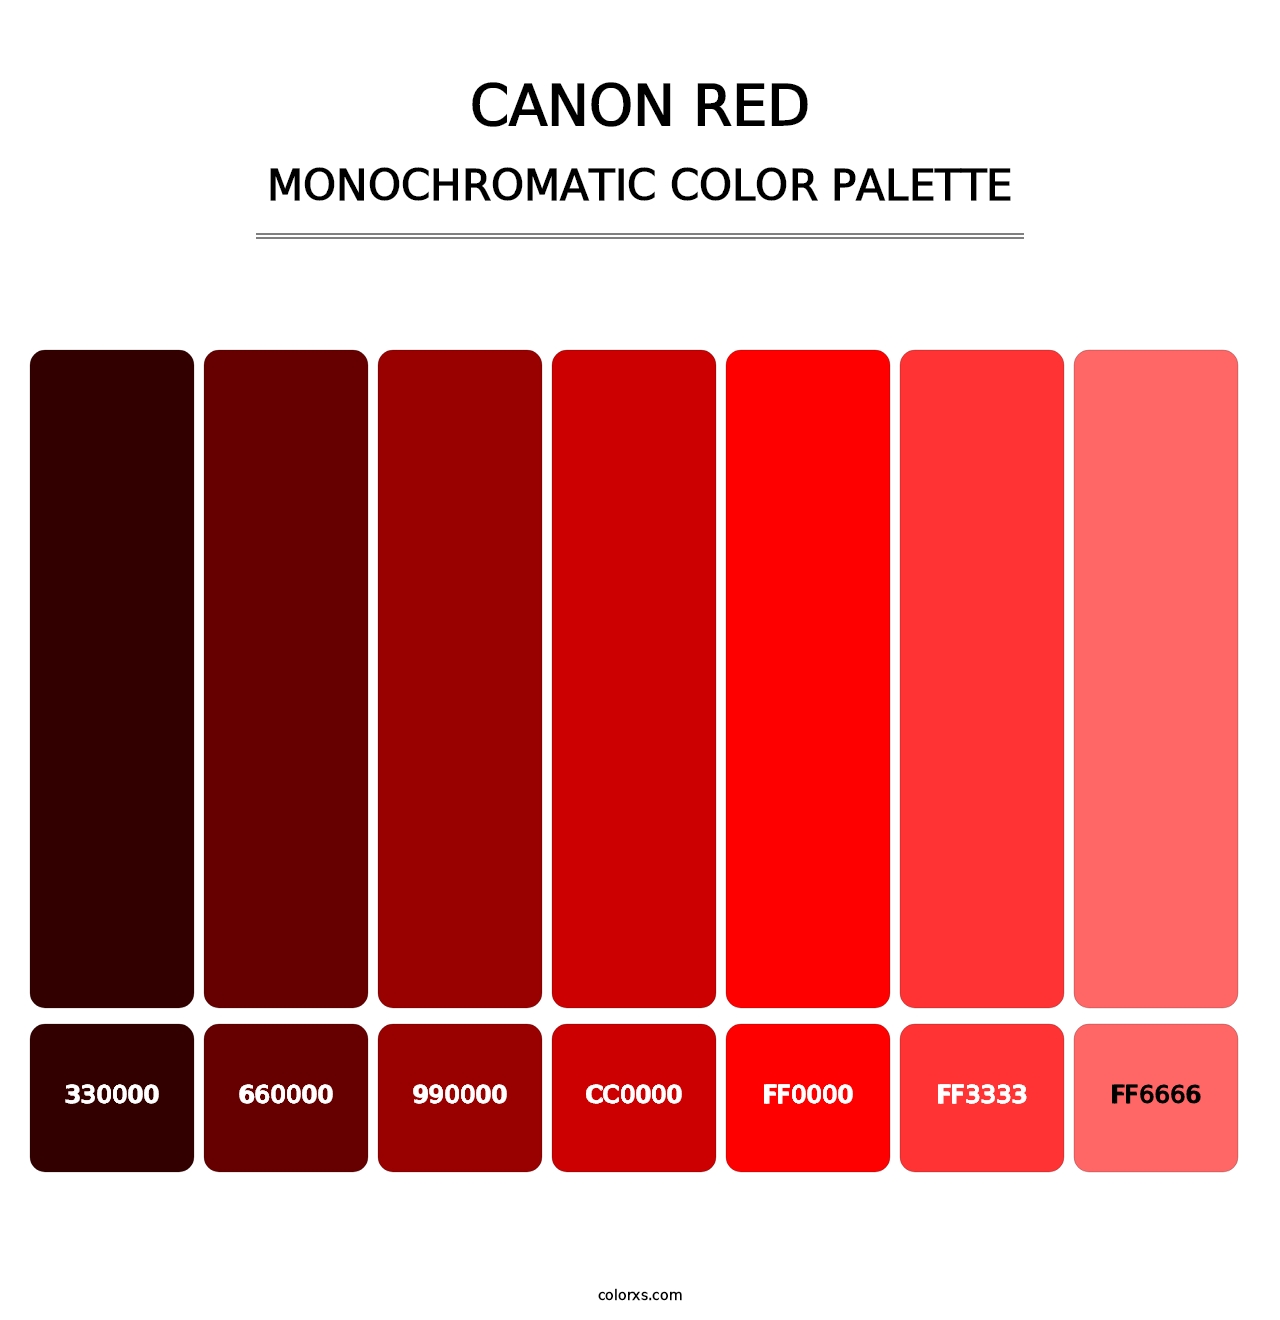 Canon Red - Monochromatic Color Palette